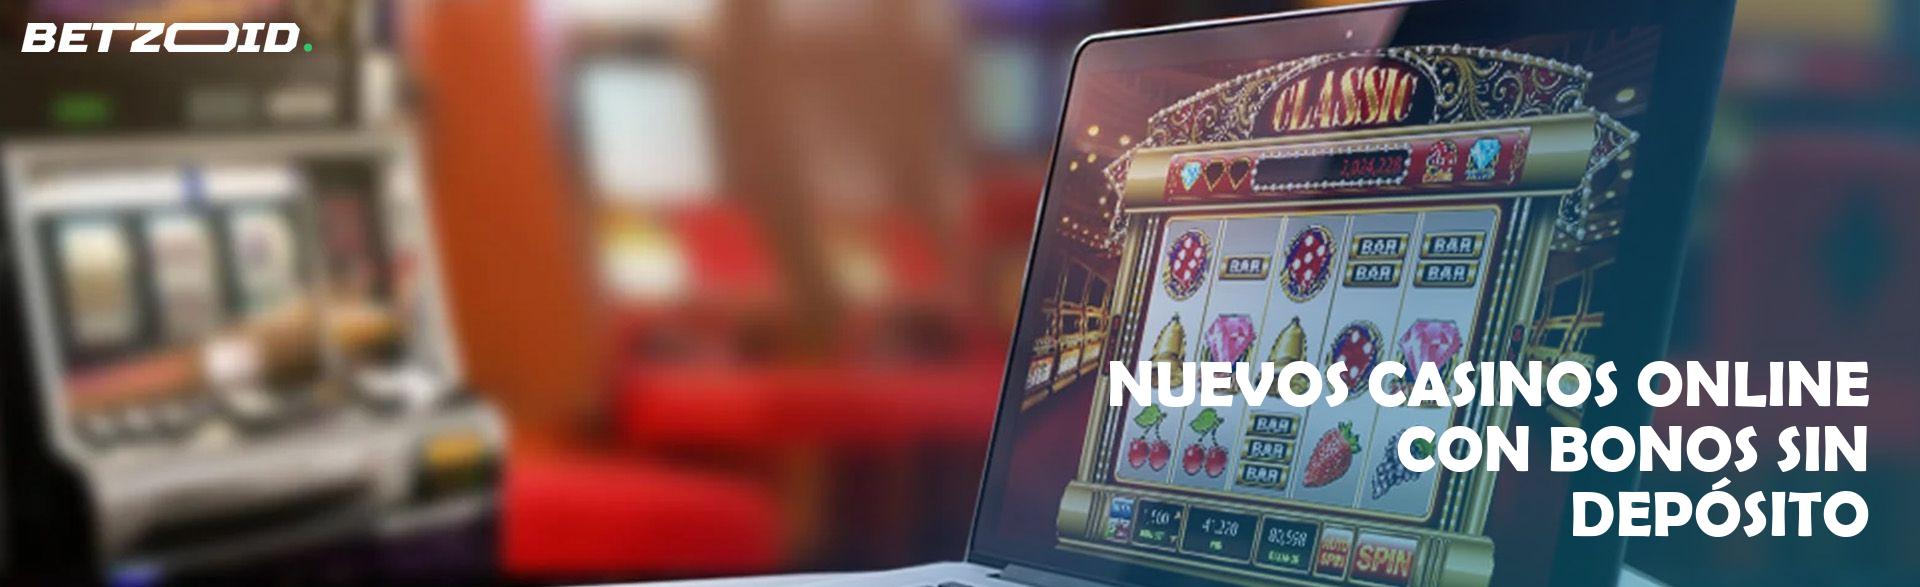 Nuevos Casinos Online con Bonos sin Depósito.